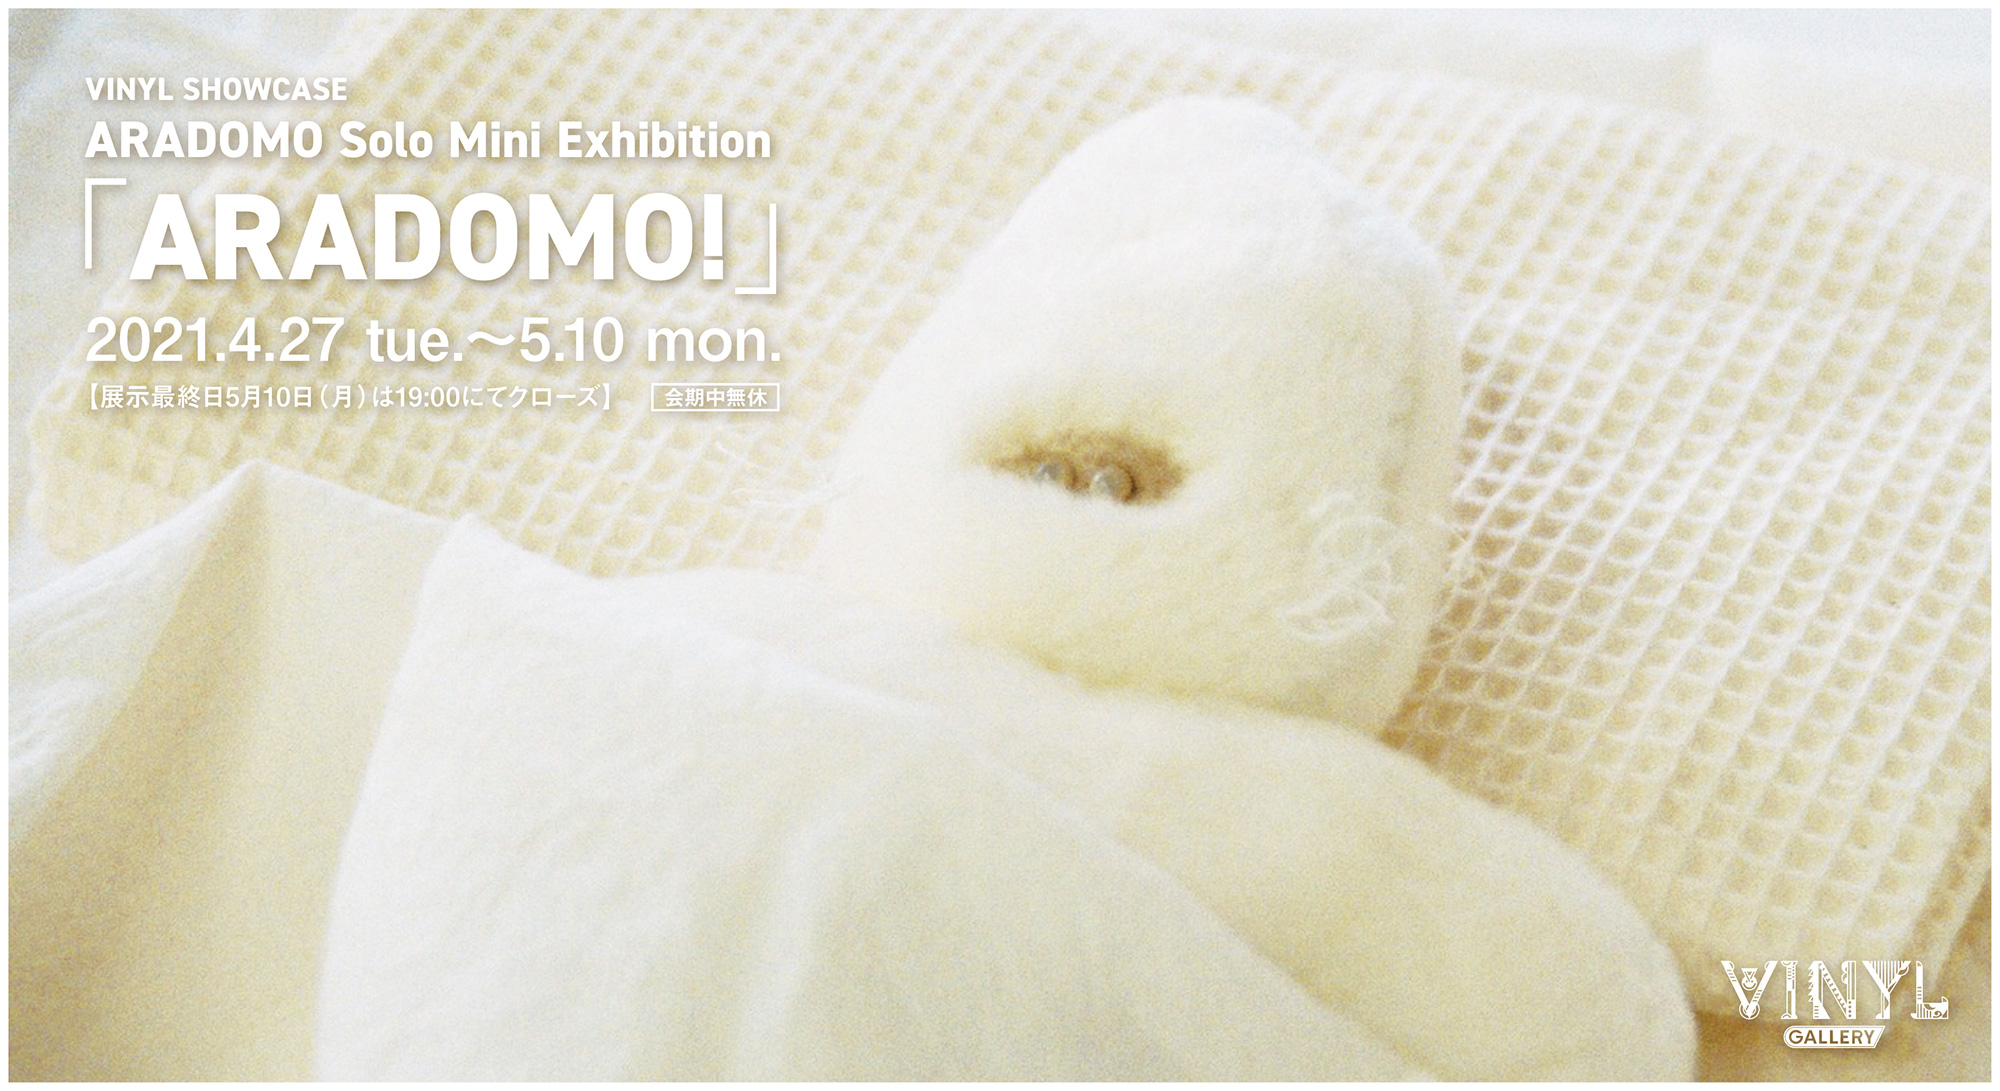 VINYL SHOWCASE ARADOMO Solo Mini Exhibition「ARADOMO!」